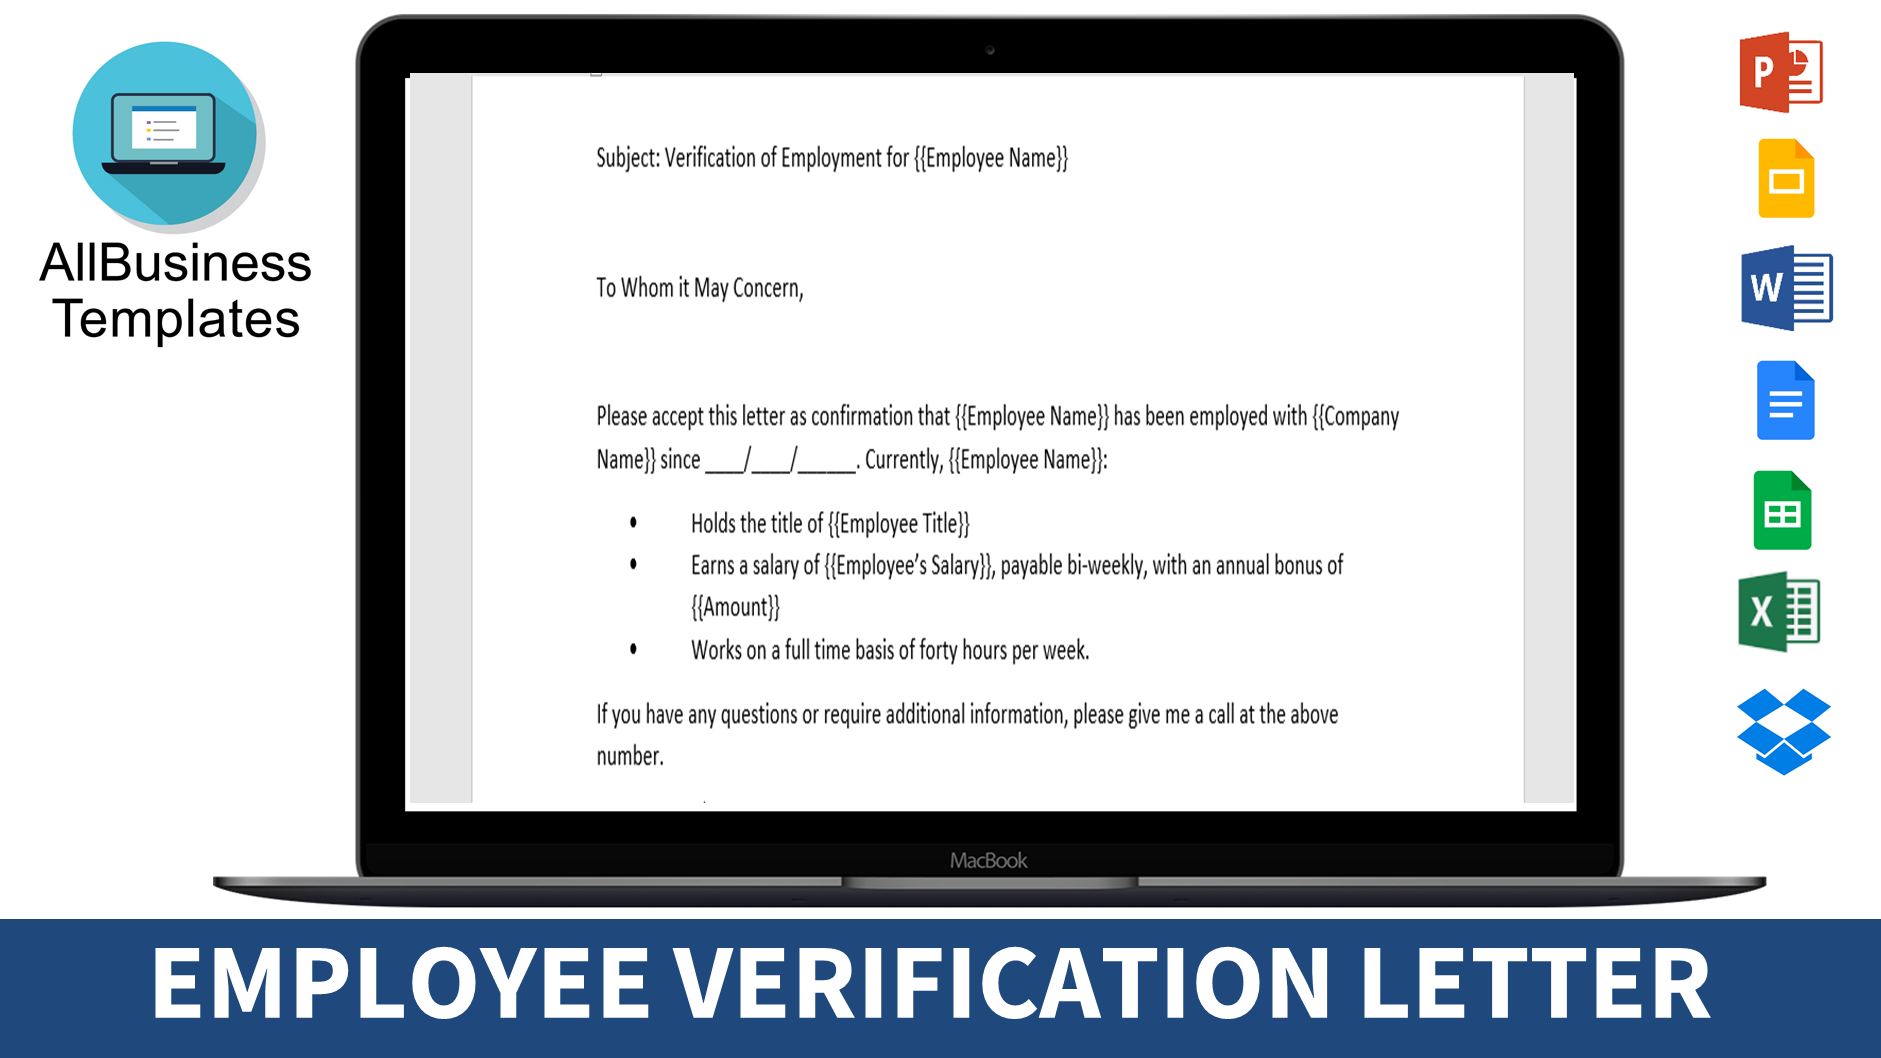 employment verification letter sample plantilla imagen principal